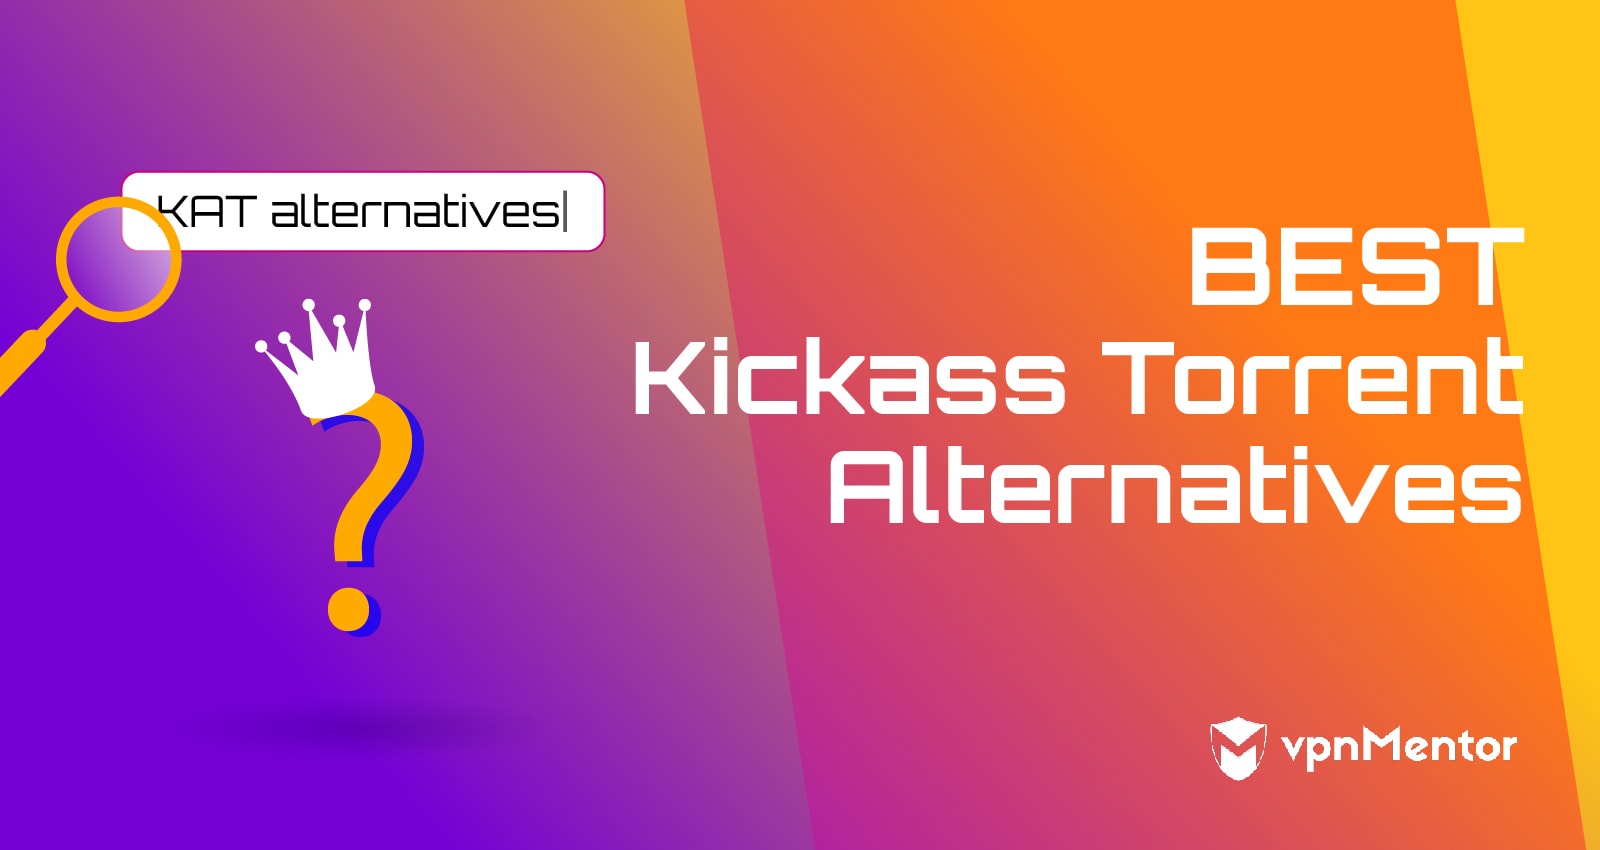 7 beste alternatieven voor Kickass Torrents die in 2023 werken